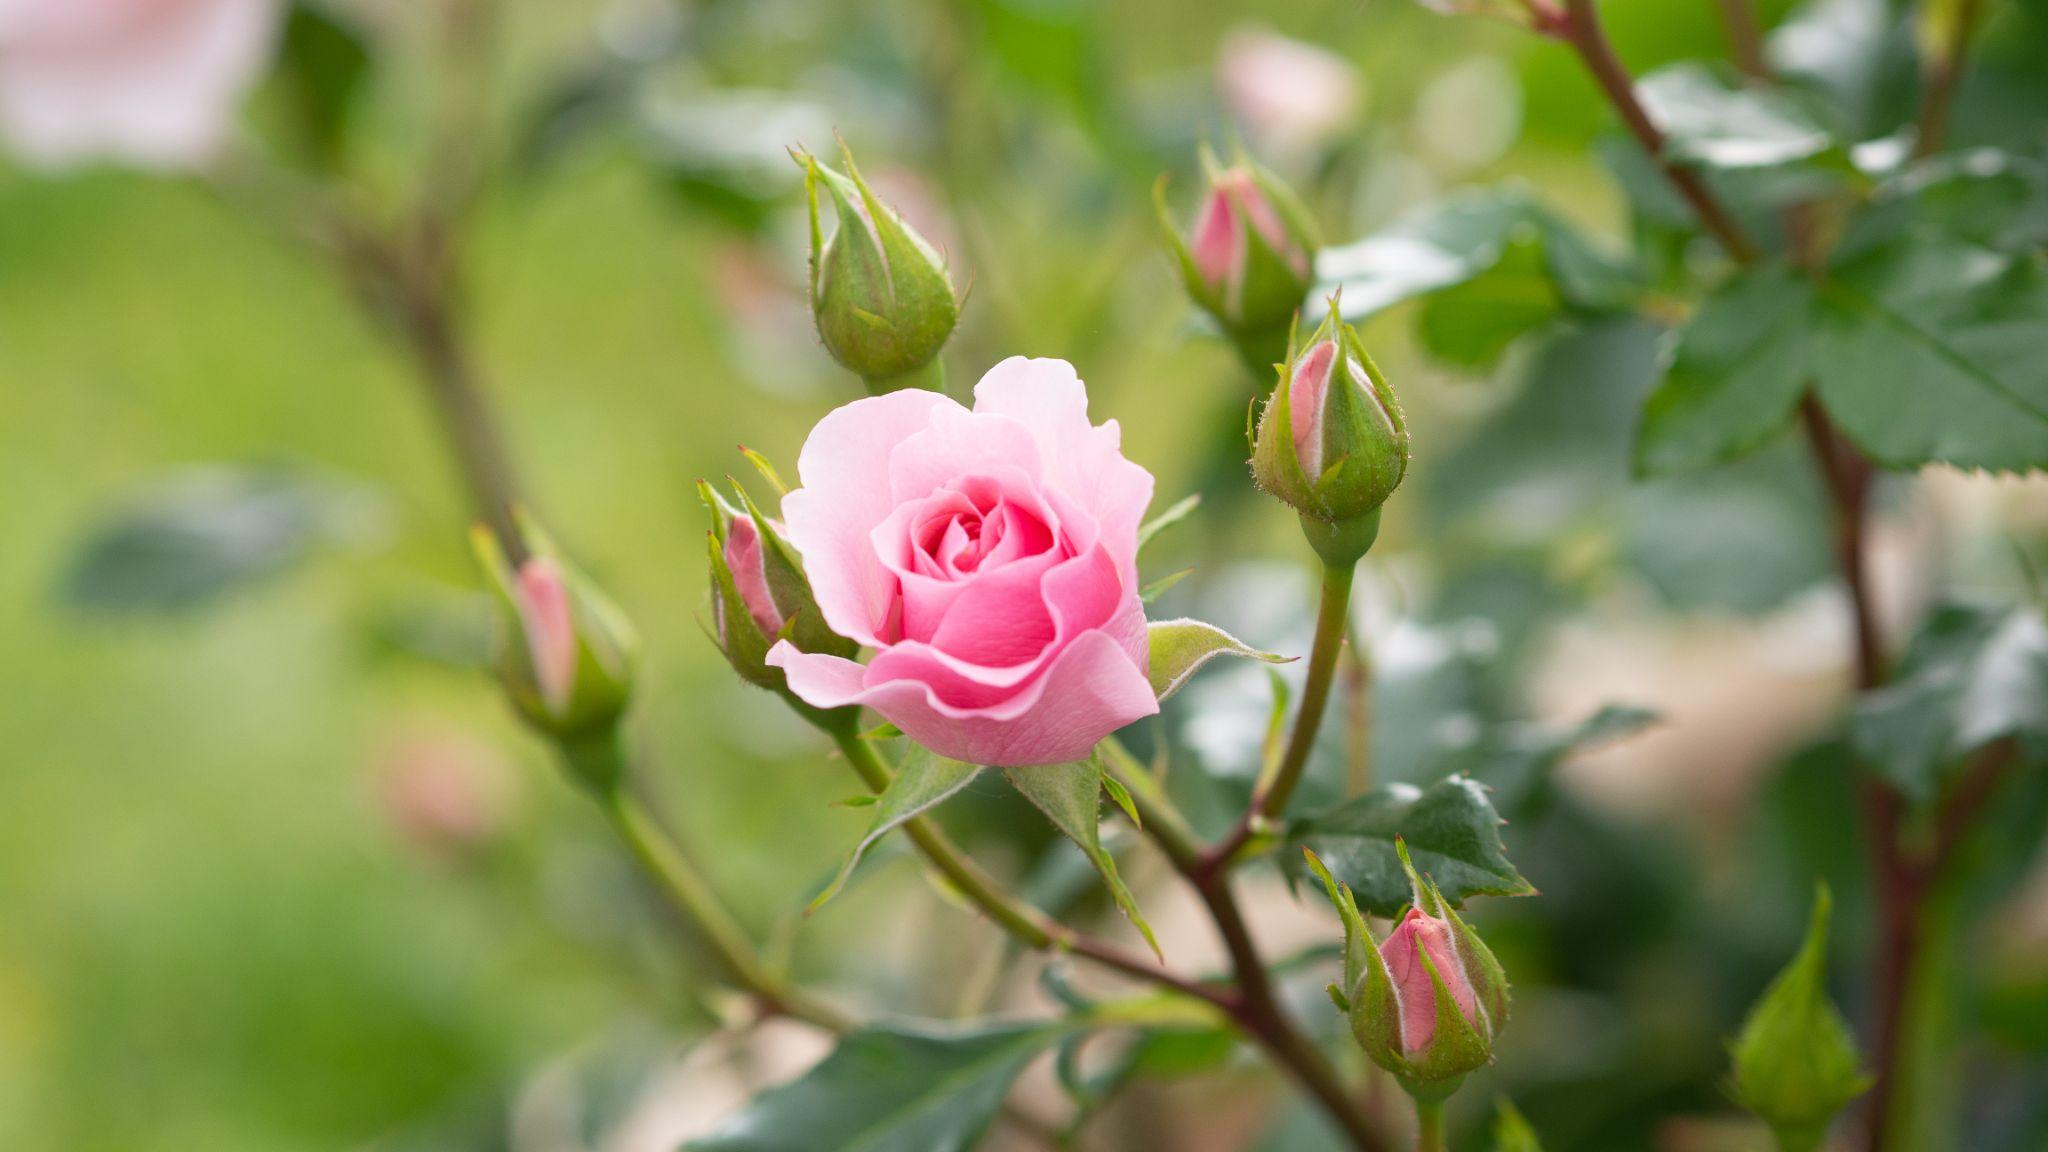 50+ Hình hình ảnh hoa hồng đẹp nhất và chân thành và ý nghĩa theo đòi sắc tố - 32